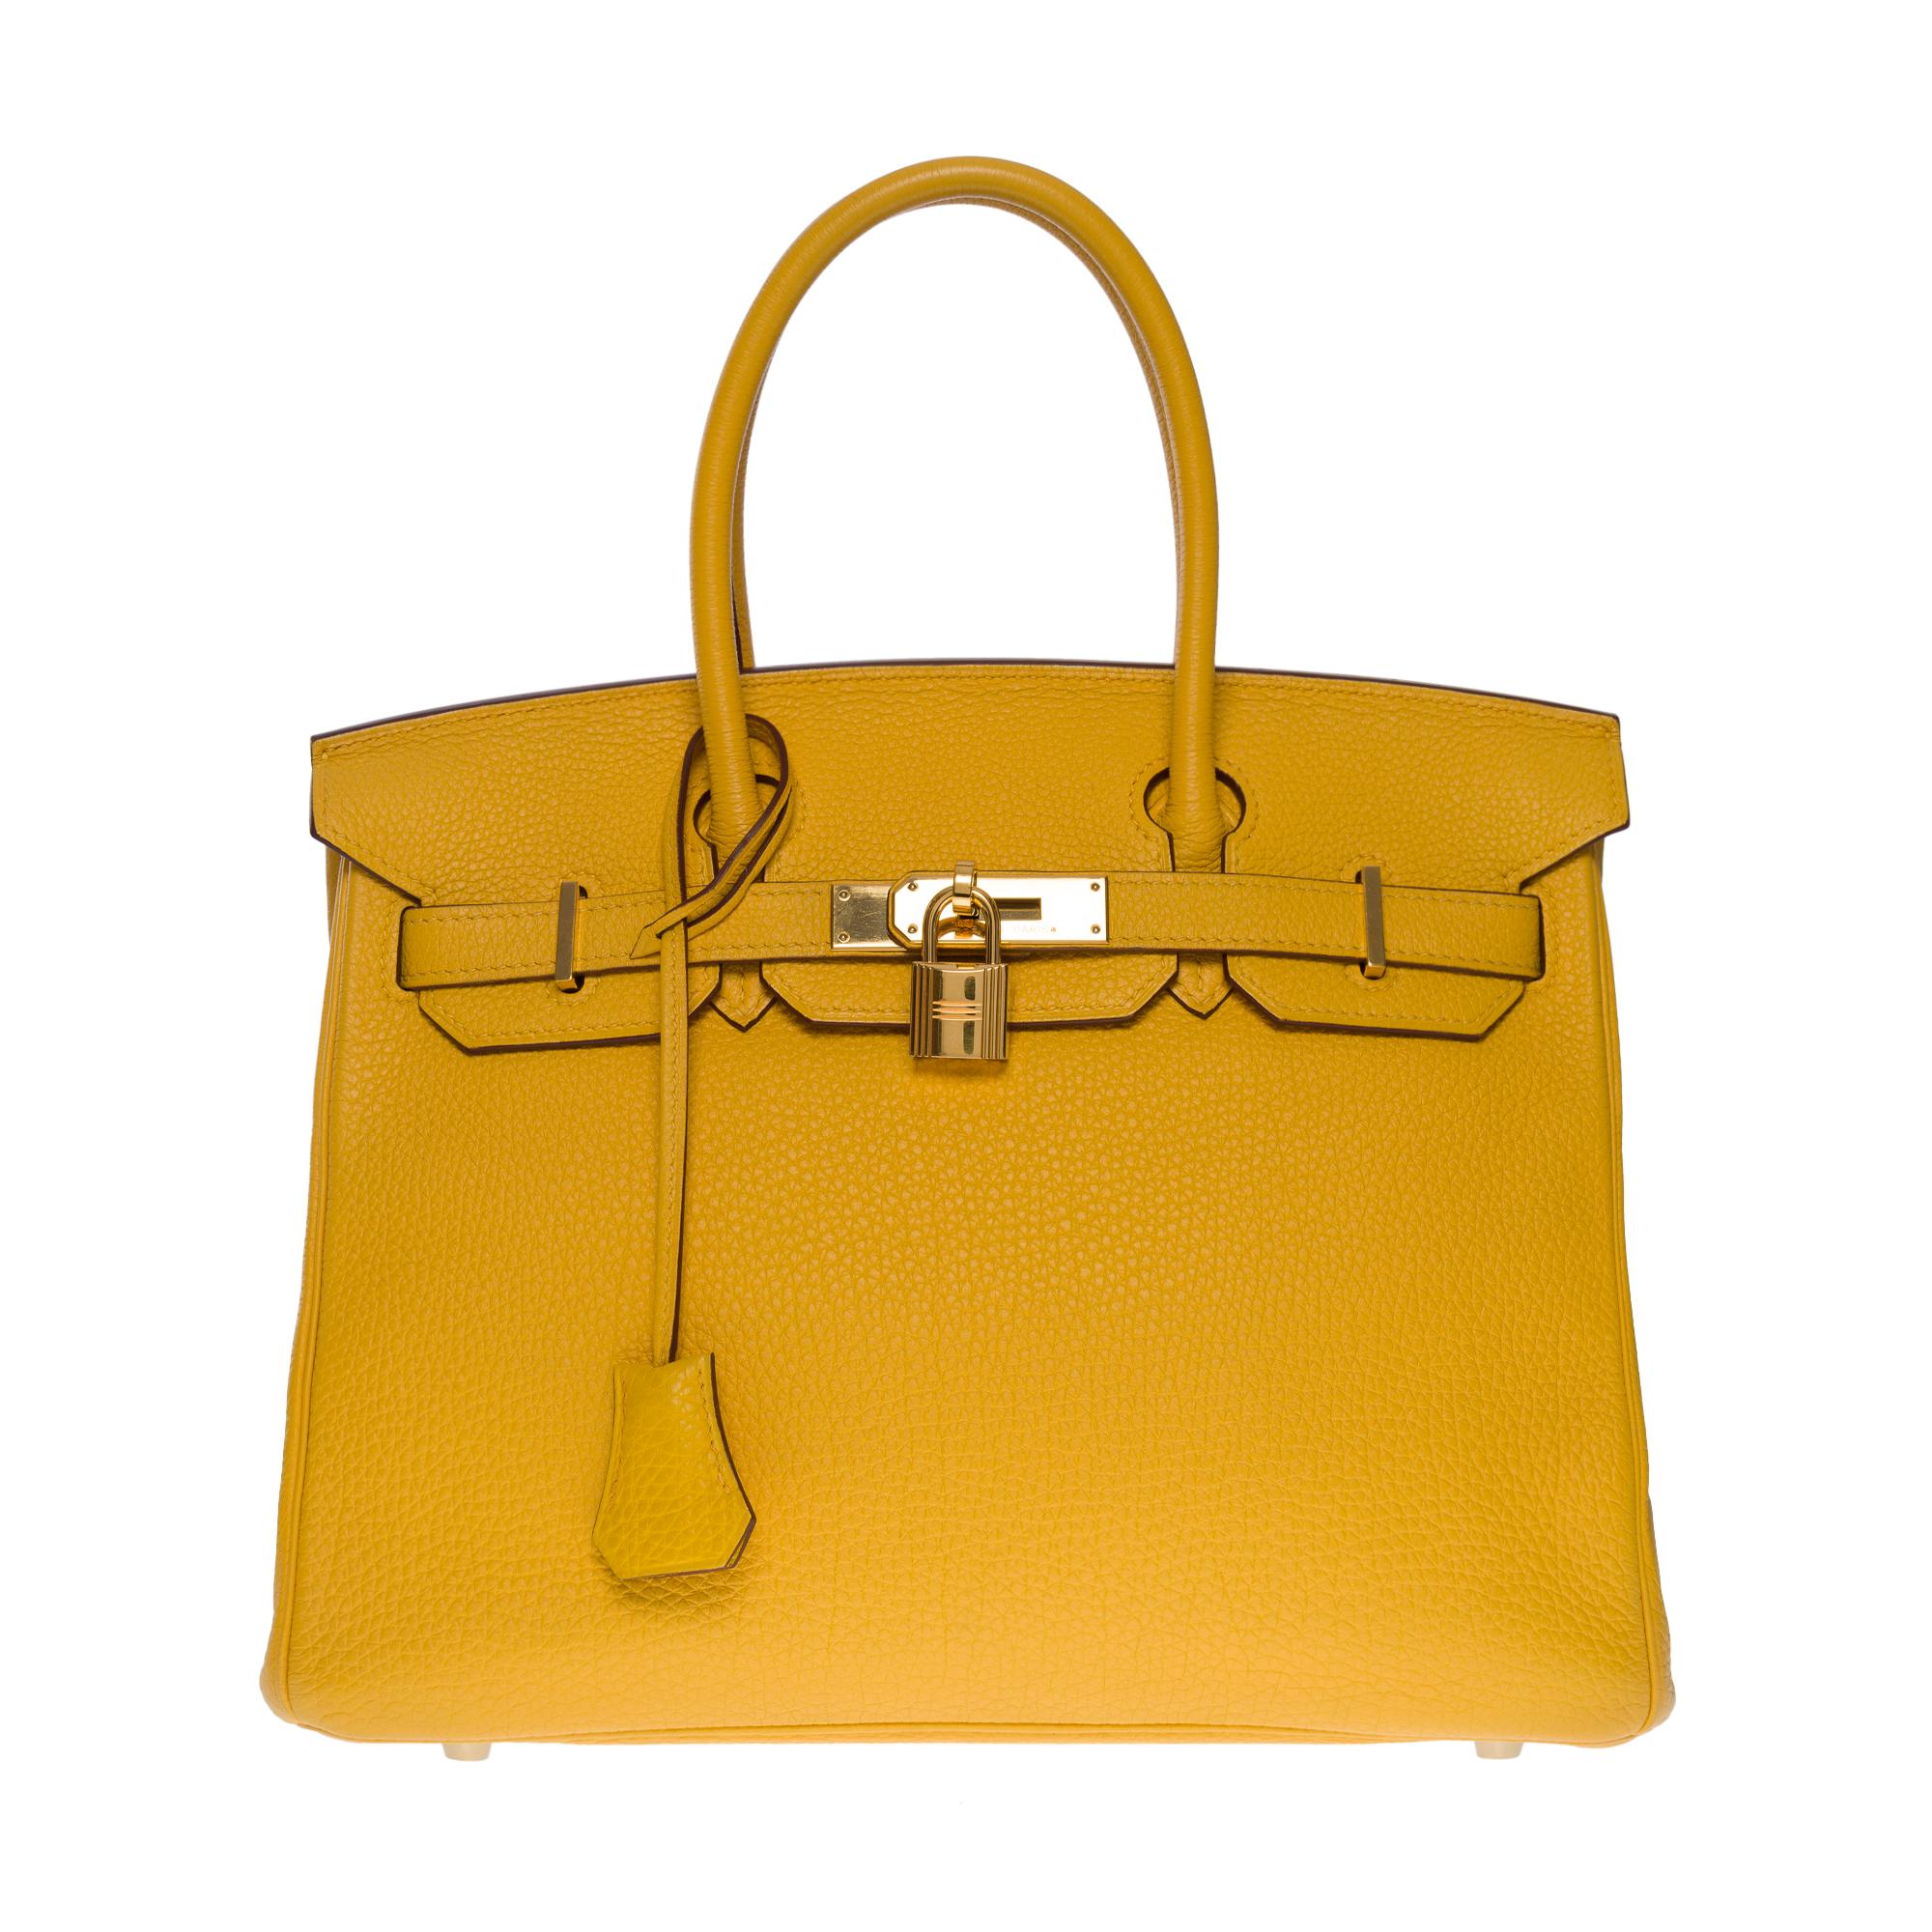 Außergewöhnliche & helle Hermes Birkin 30 Handtasche aus gelbem Togo-Leder, vergoldete Metallbeschläge, doppelter gelber Ledergriff zum Tragen in der Hand

Klappenverschluss
Gelbes Lederfutter, eine Tasche mit Reißverschluss, eine aufgesetzte